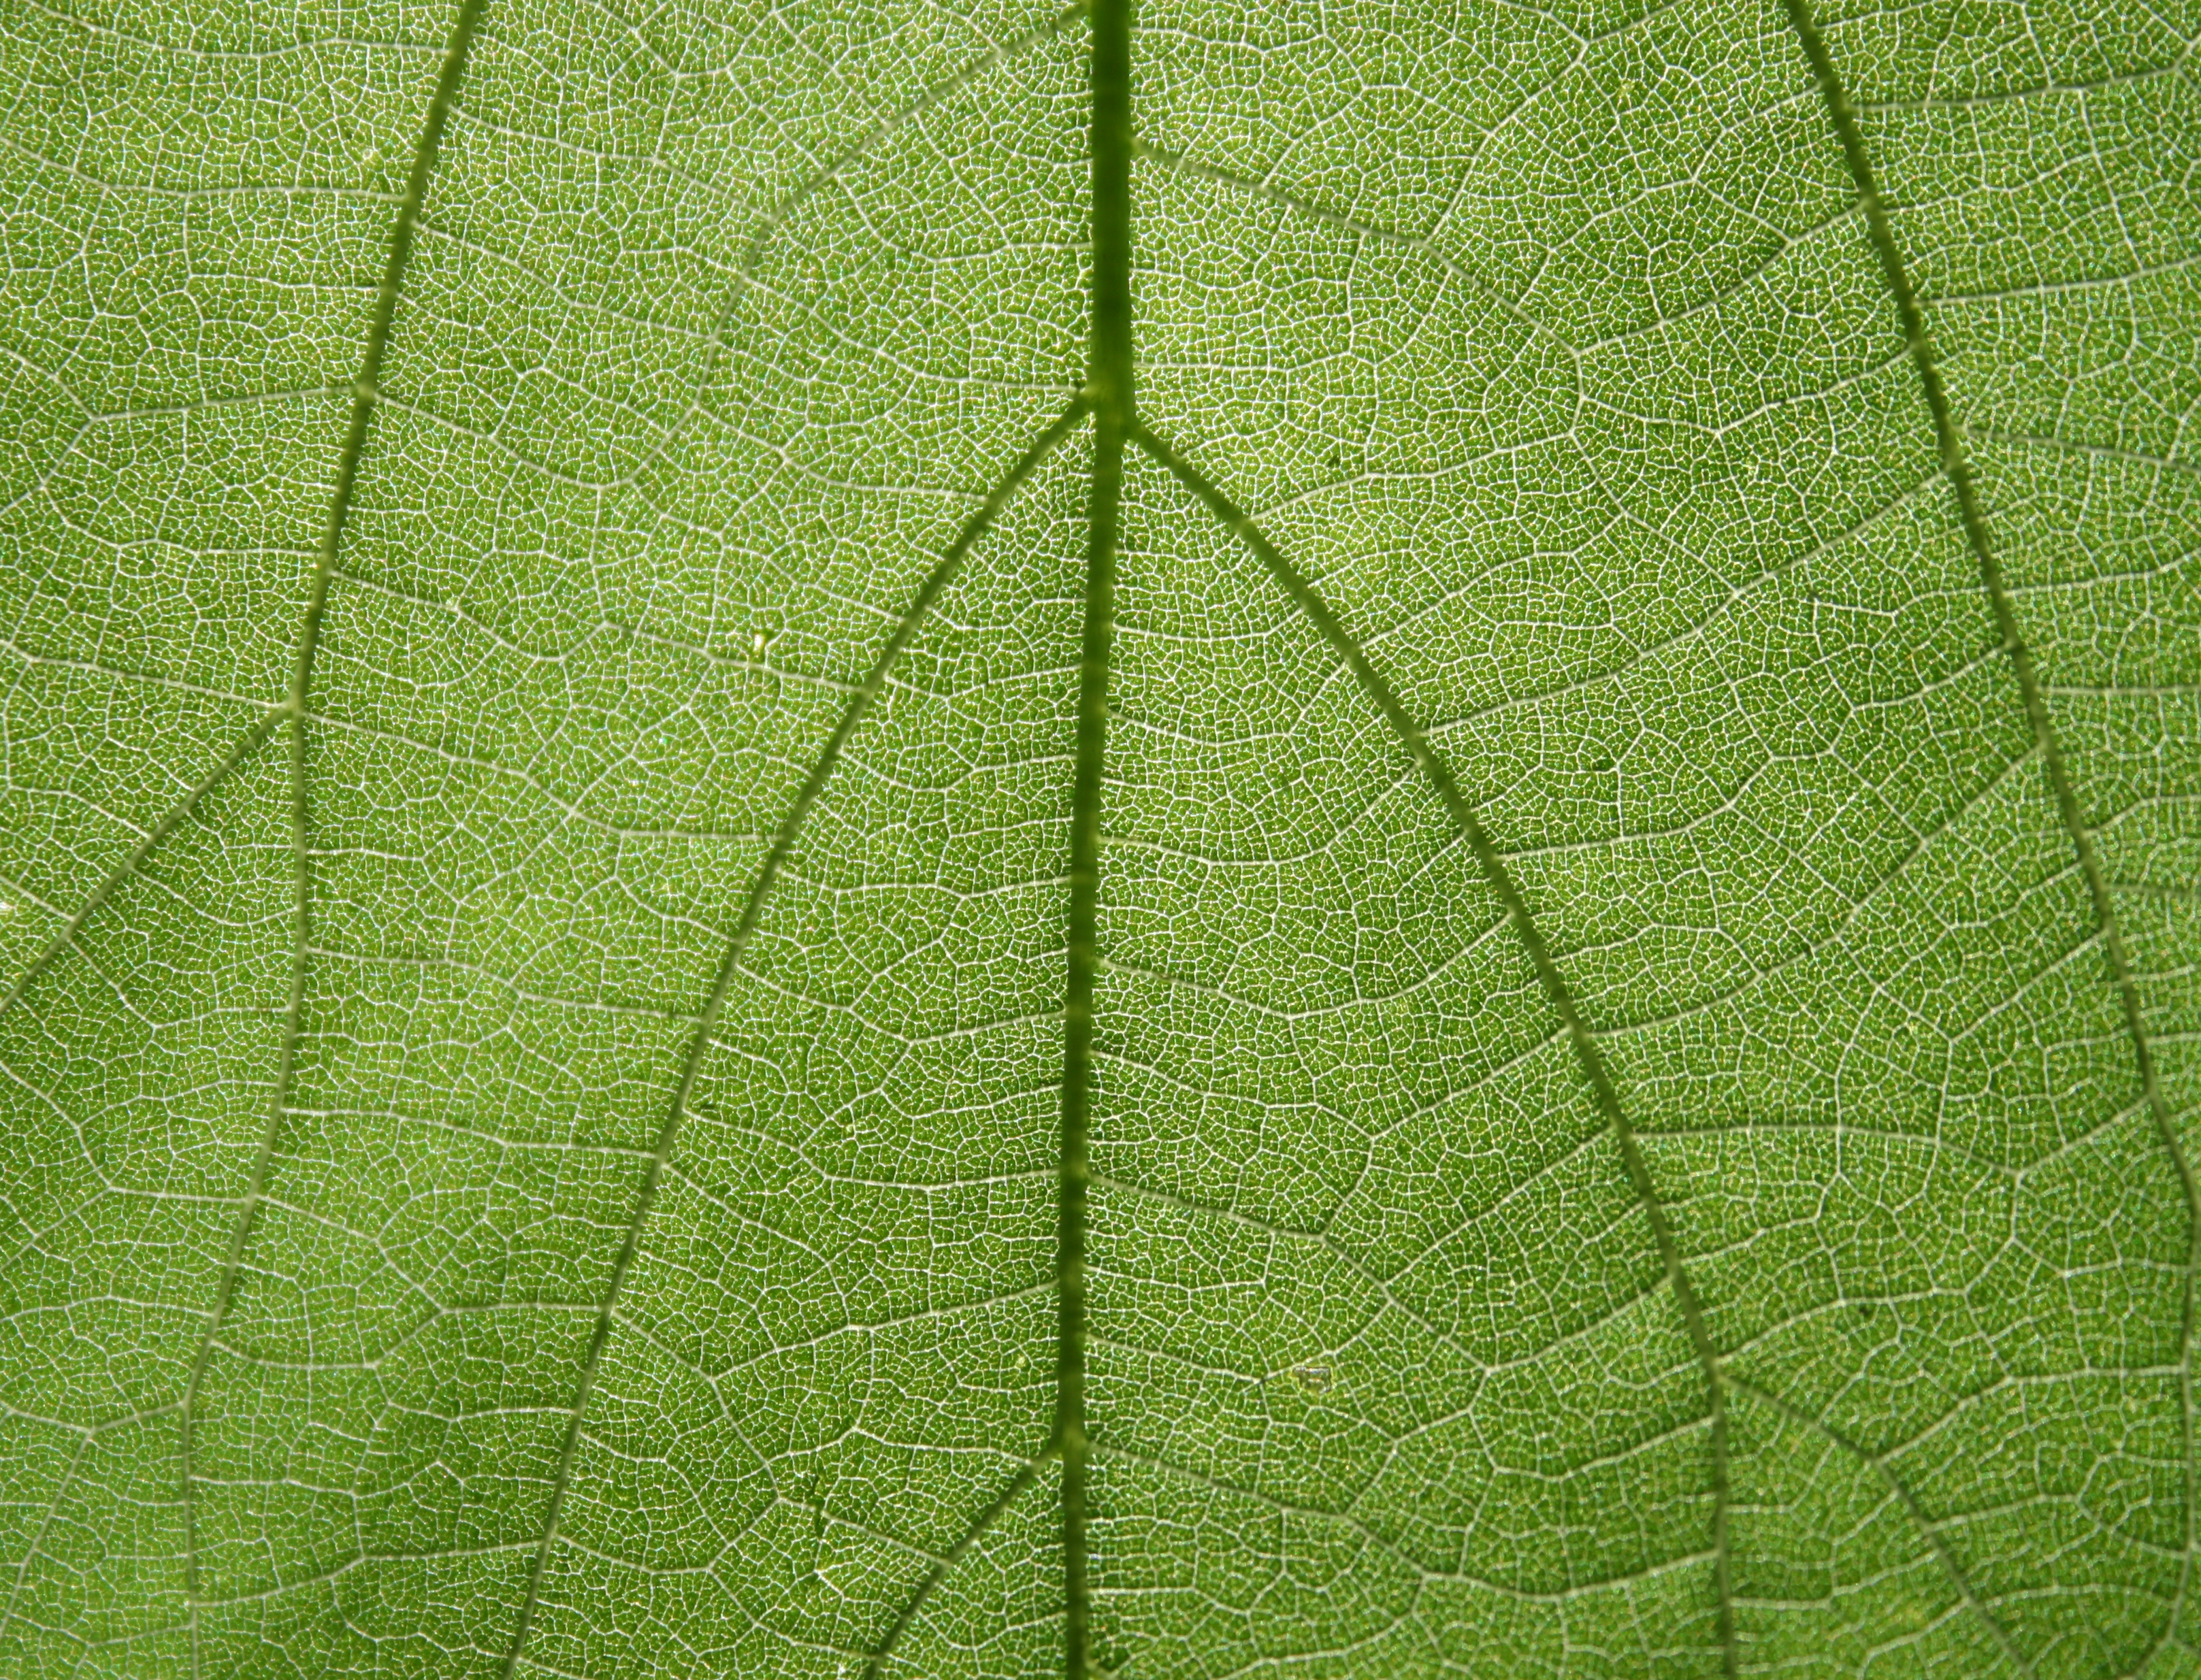 Leaf texture photo